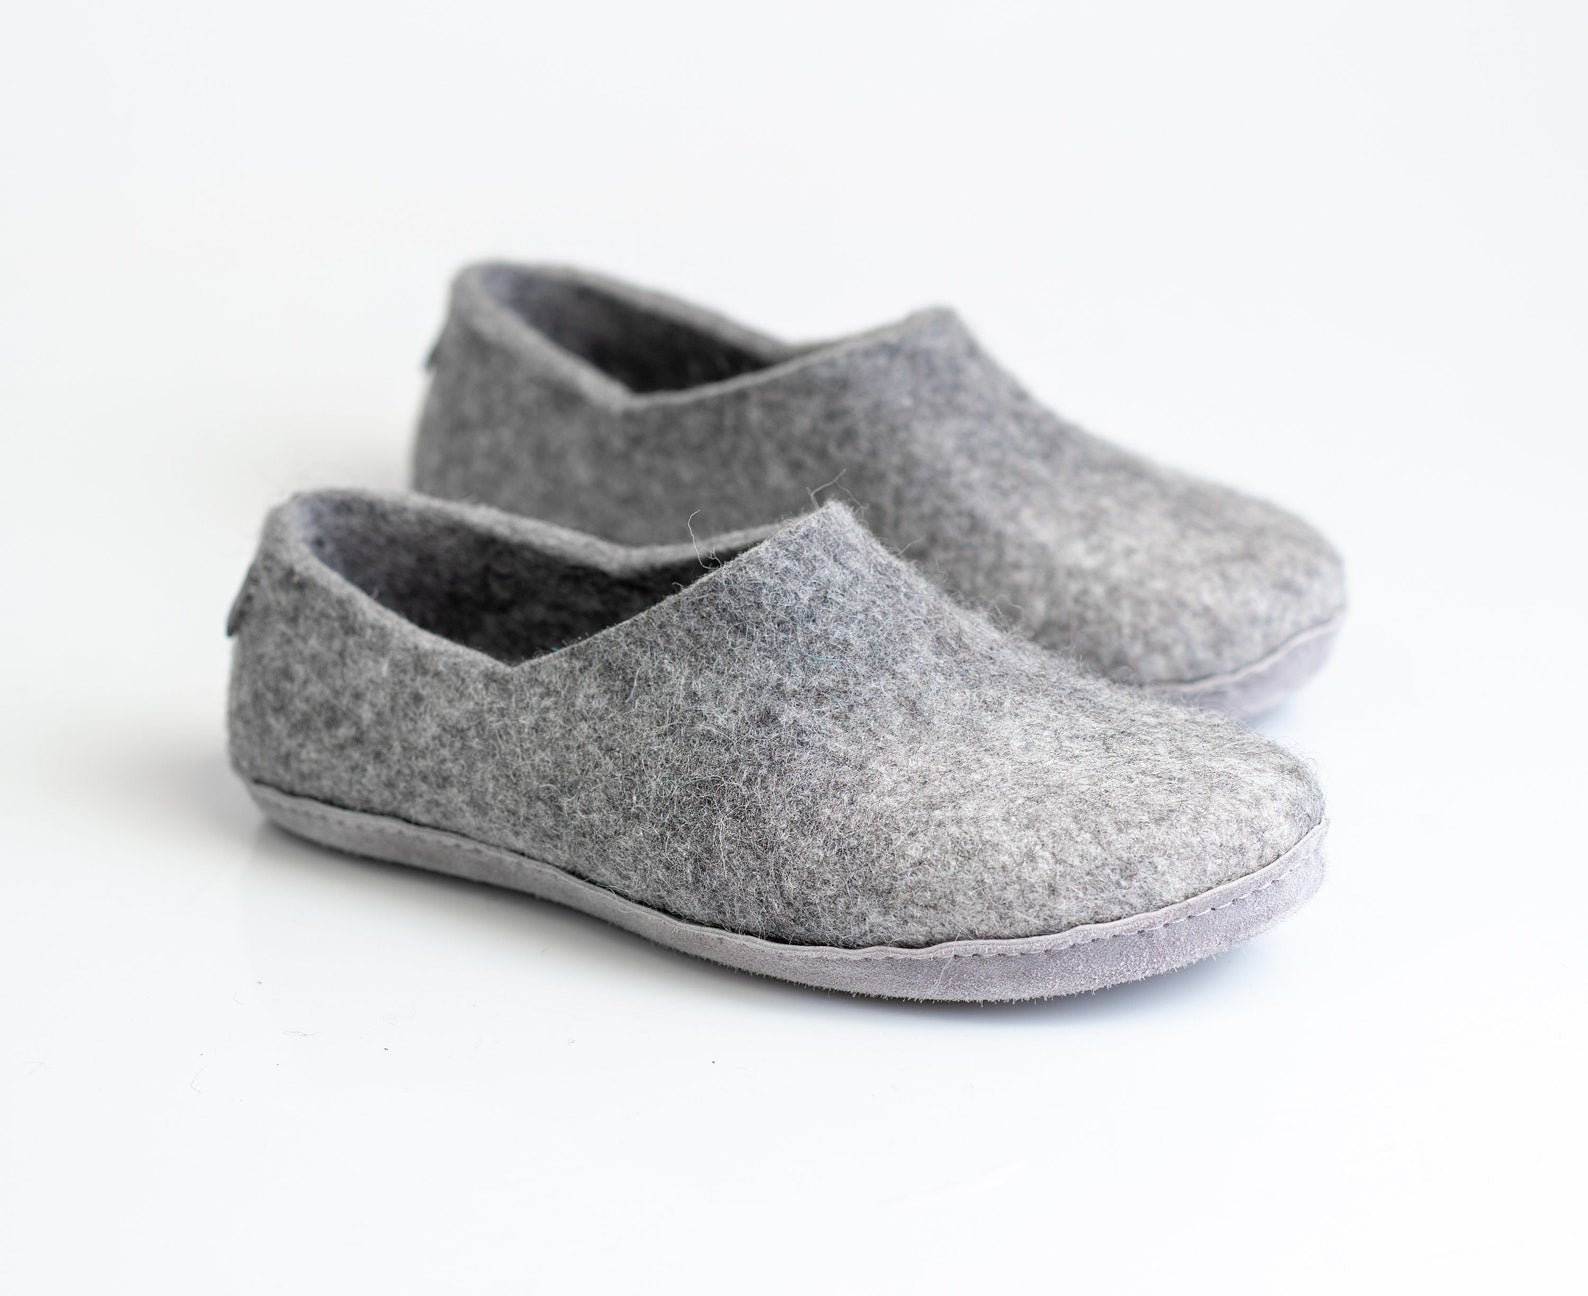 BureBure - Handcrafted Woolen Slippers for Your Comfort, Rest & Wellne ...